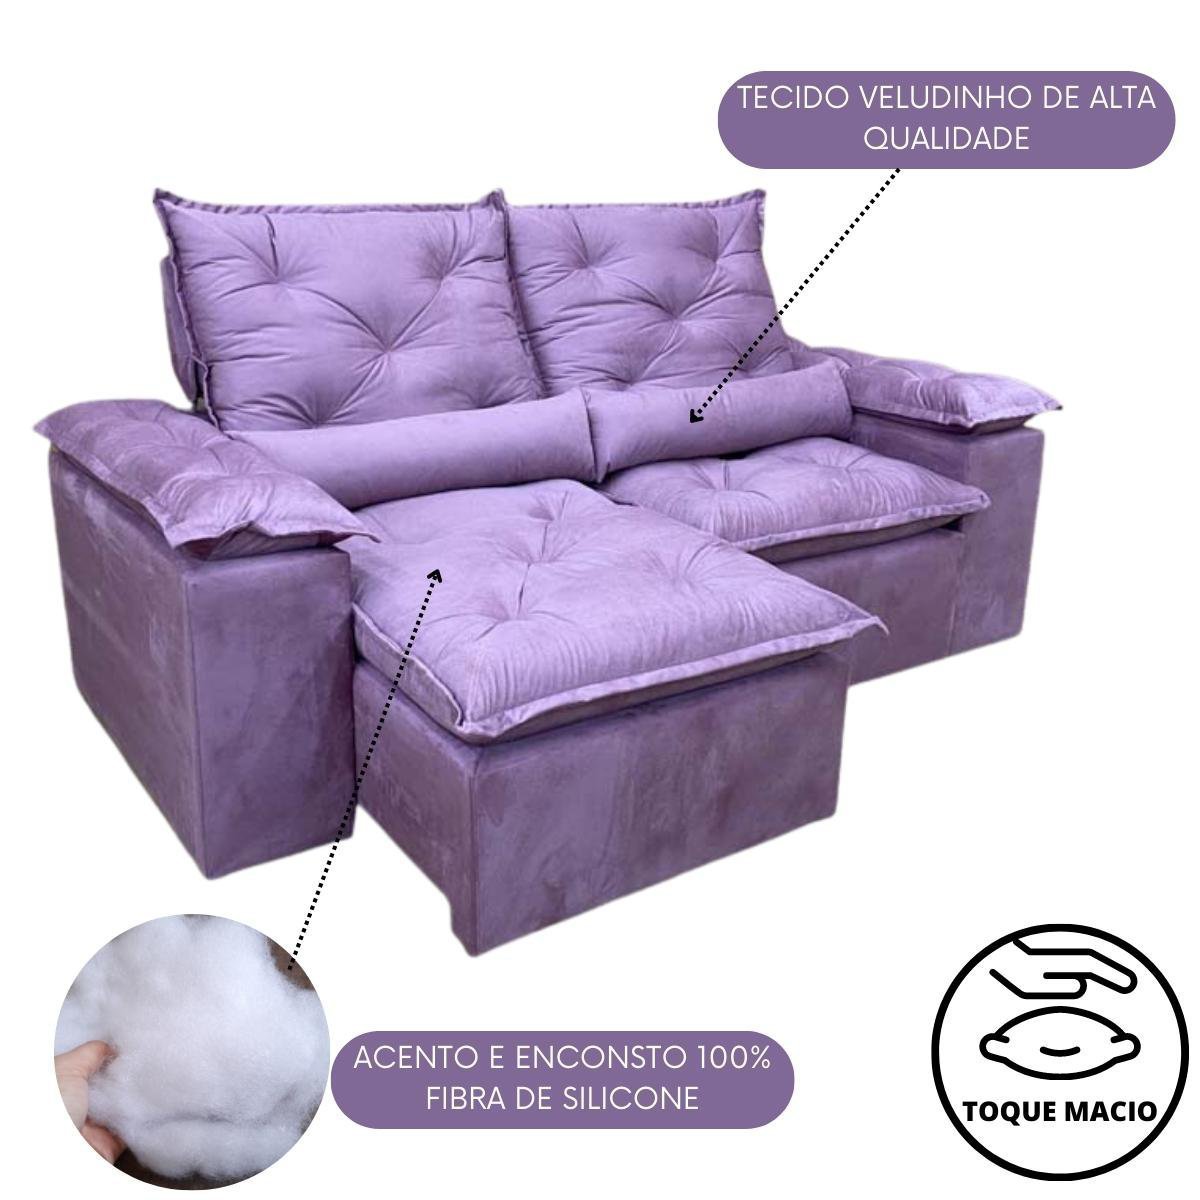 Sofa Reclinavel Retratil Design Elegante Athena 2,30m Veludo Cor:Violeta - 4